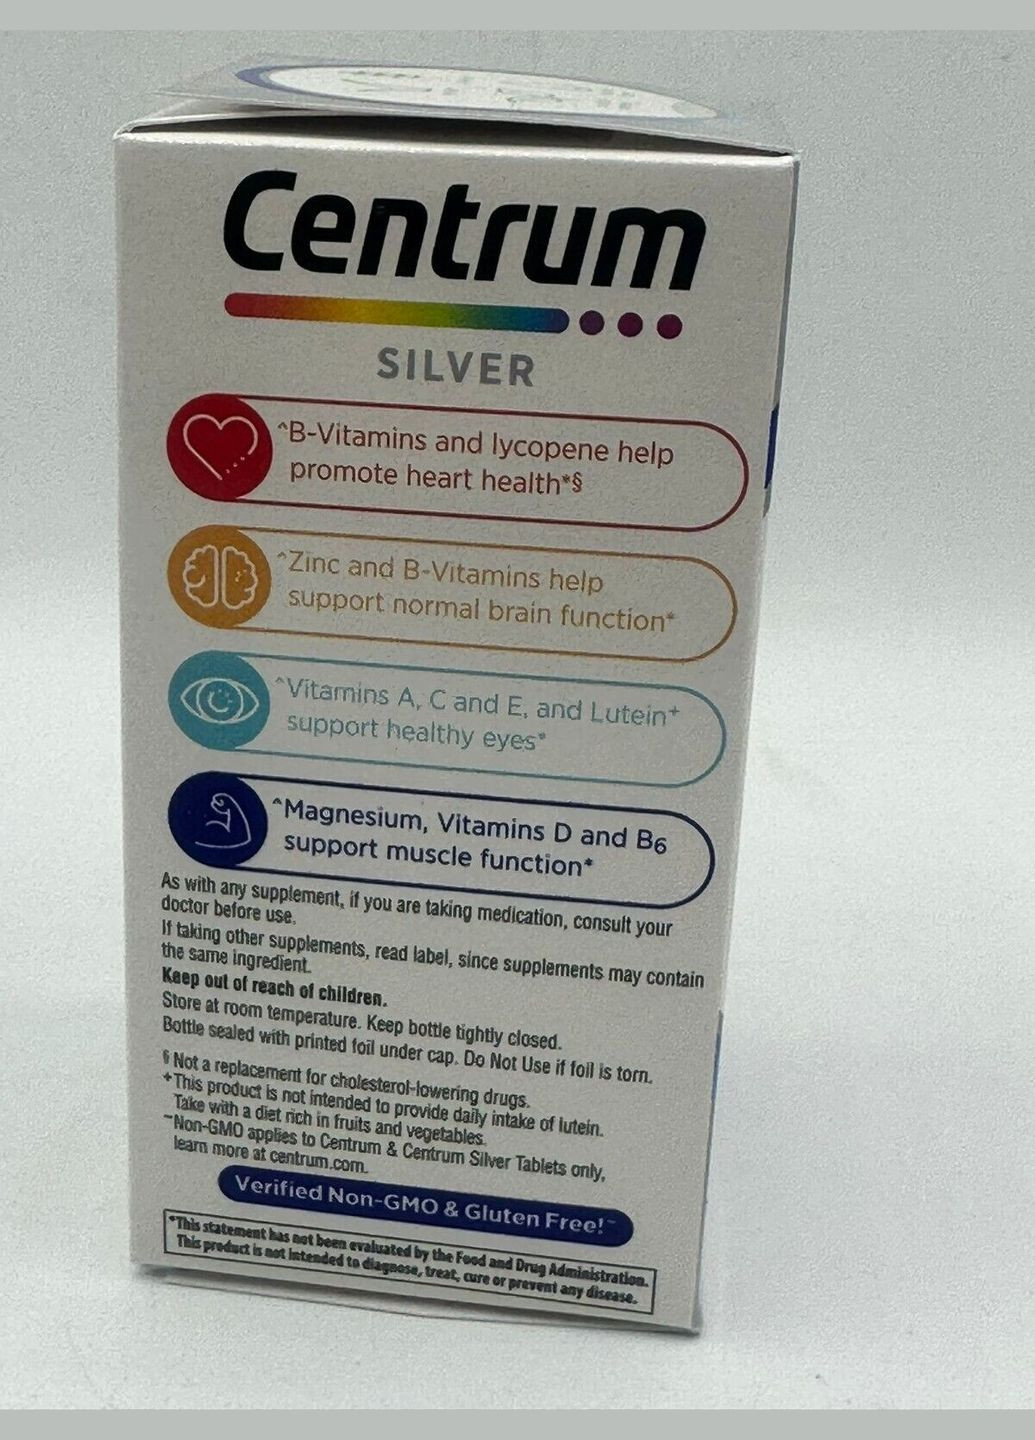 Витаминноминеральный комплекс для мужчин старше 50 лет Silver Men 50+ (100 таблеток на 100 дней) Centrum (280265991)